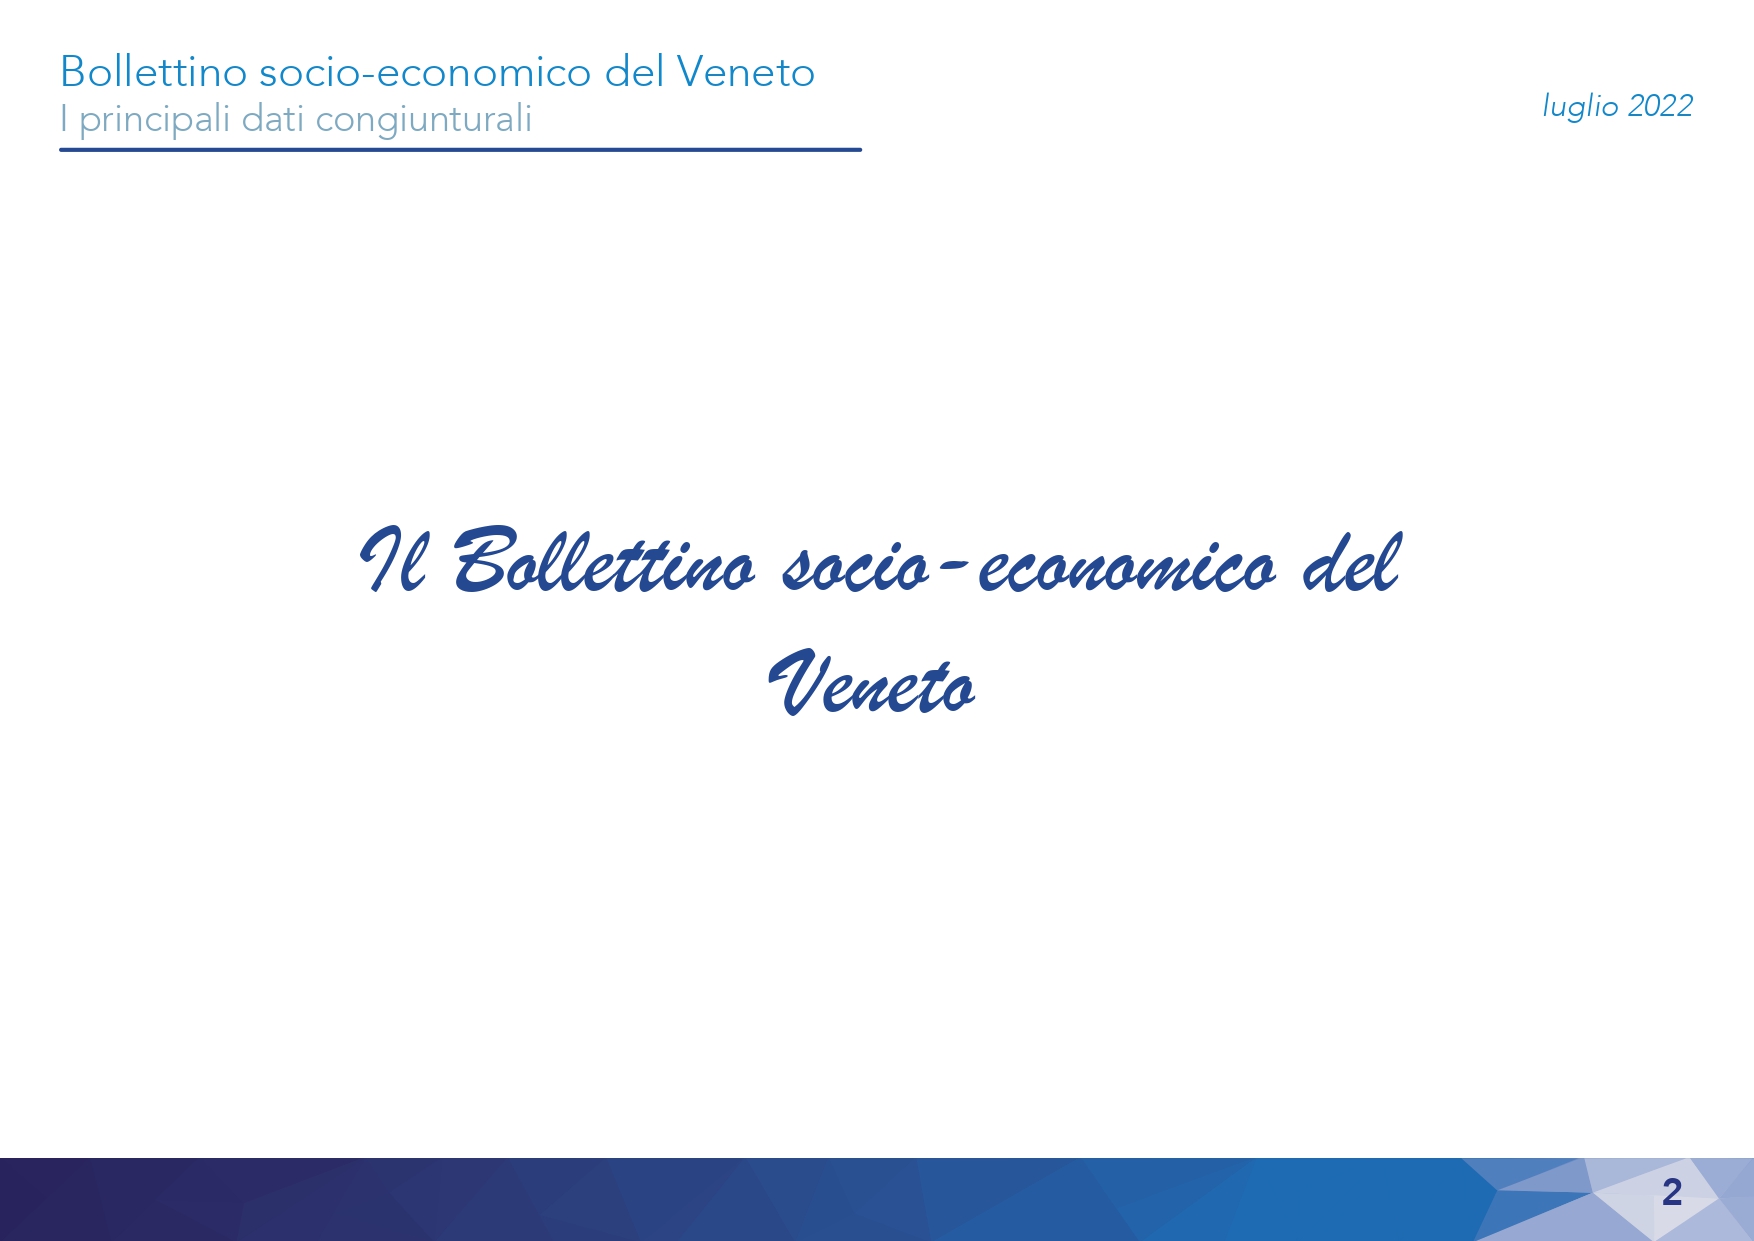 1630-2022 Bollettino Socio-economico - Luglio_page-0002